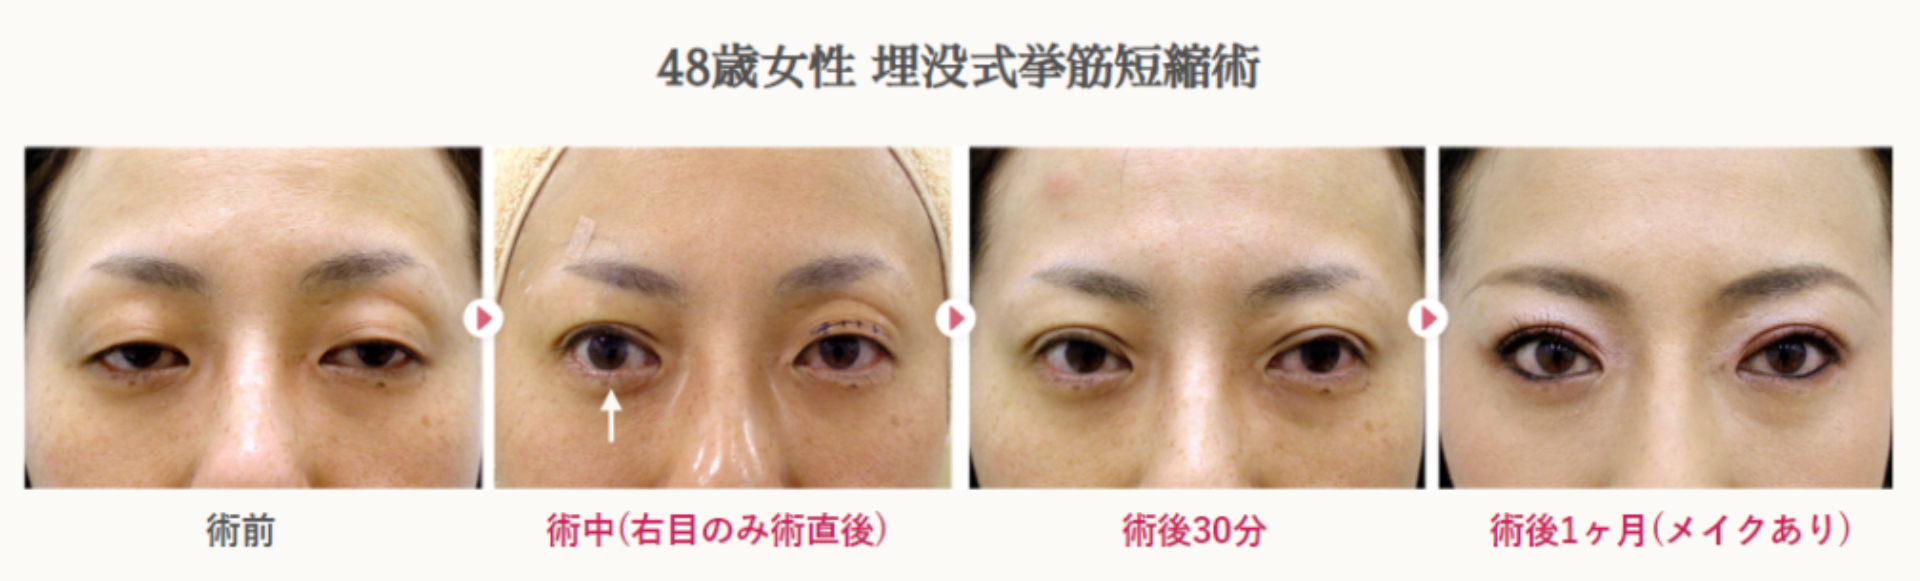 48歳女性の切らない眼瞼下垂による経過写真